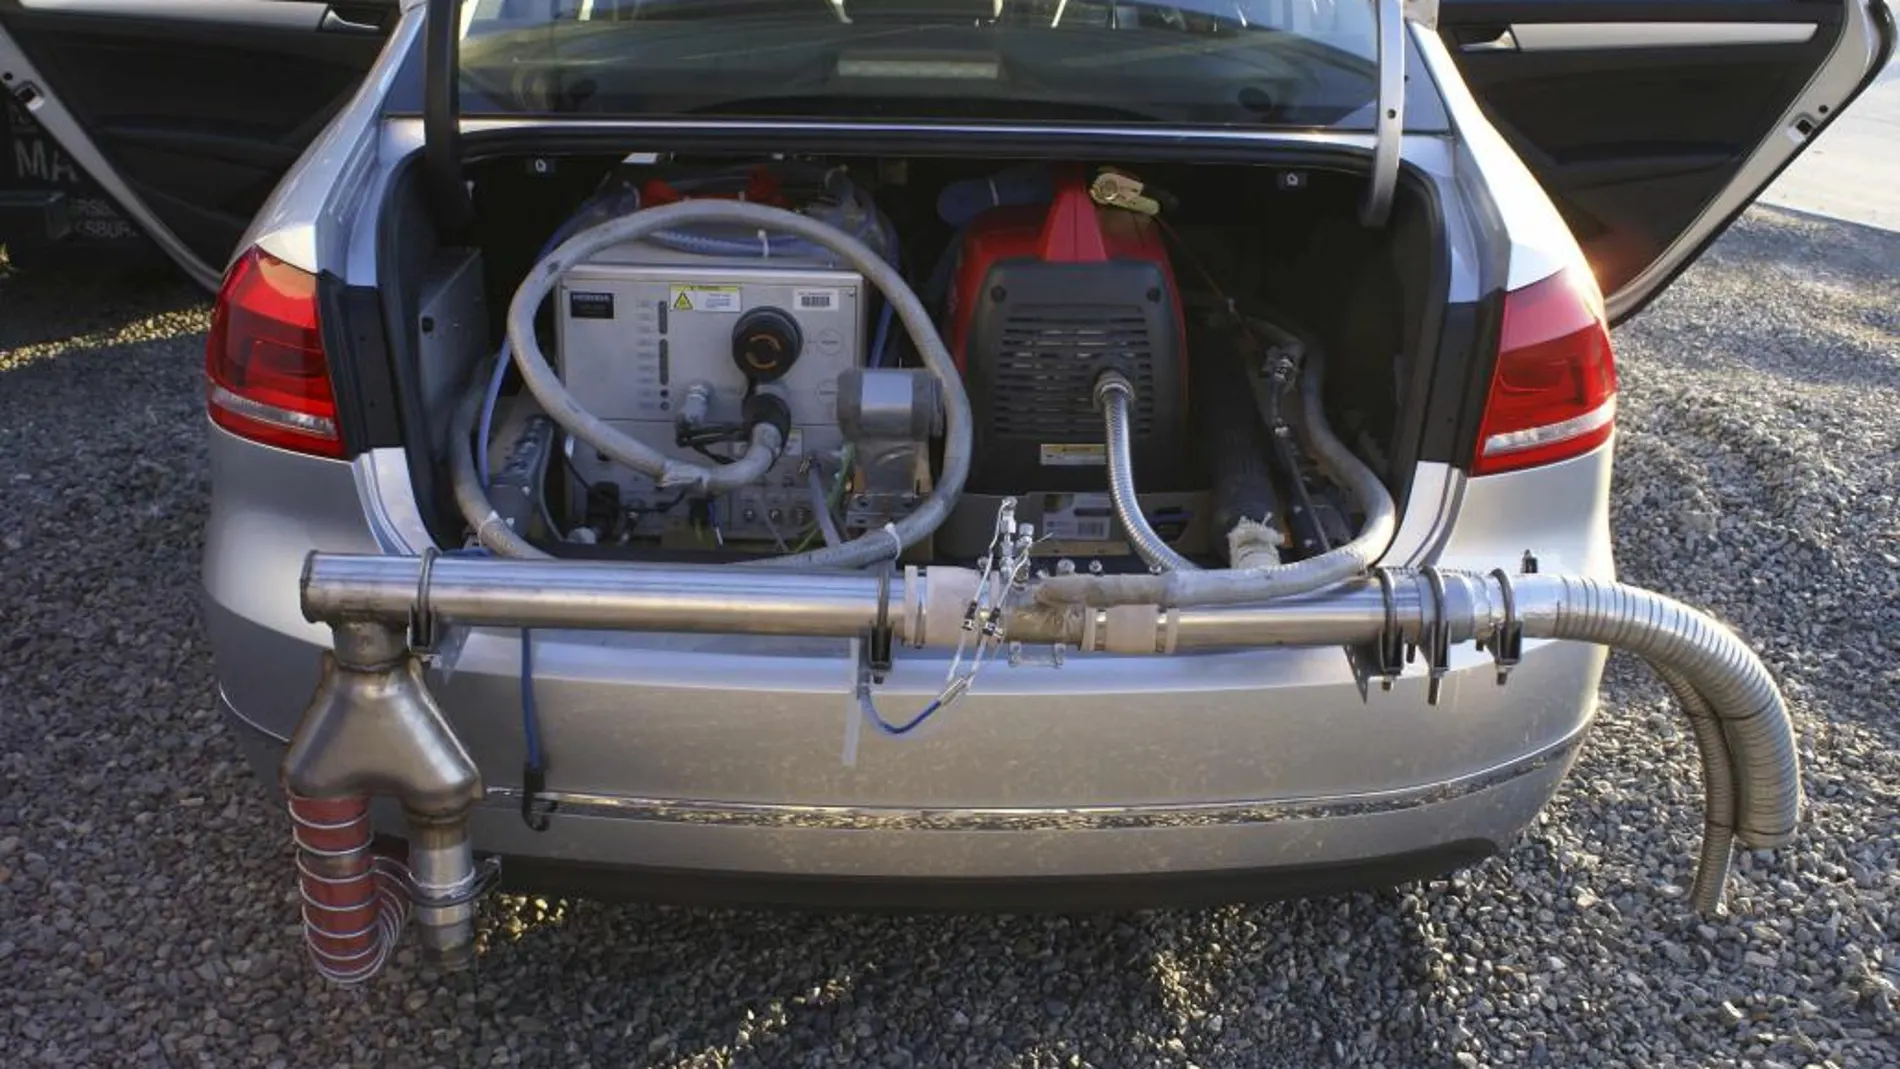 Contriol de emisiones en un Volkswagen Passat diesel fabricado en 2012